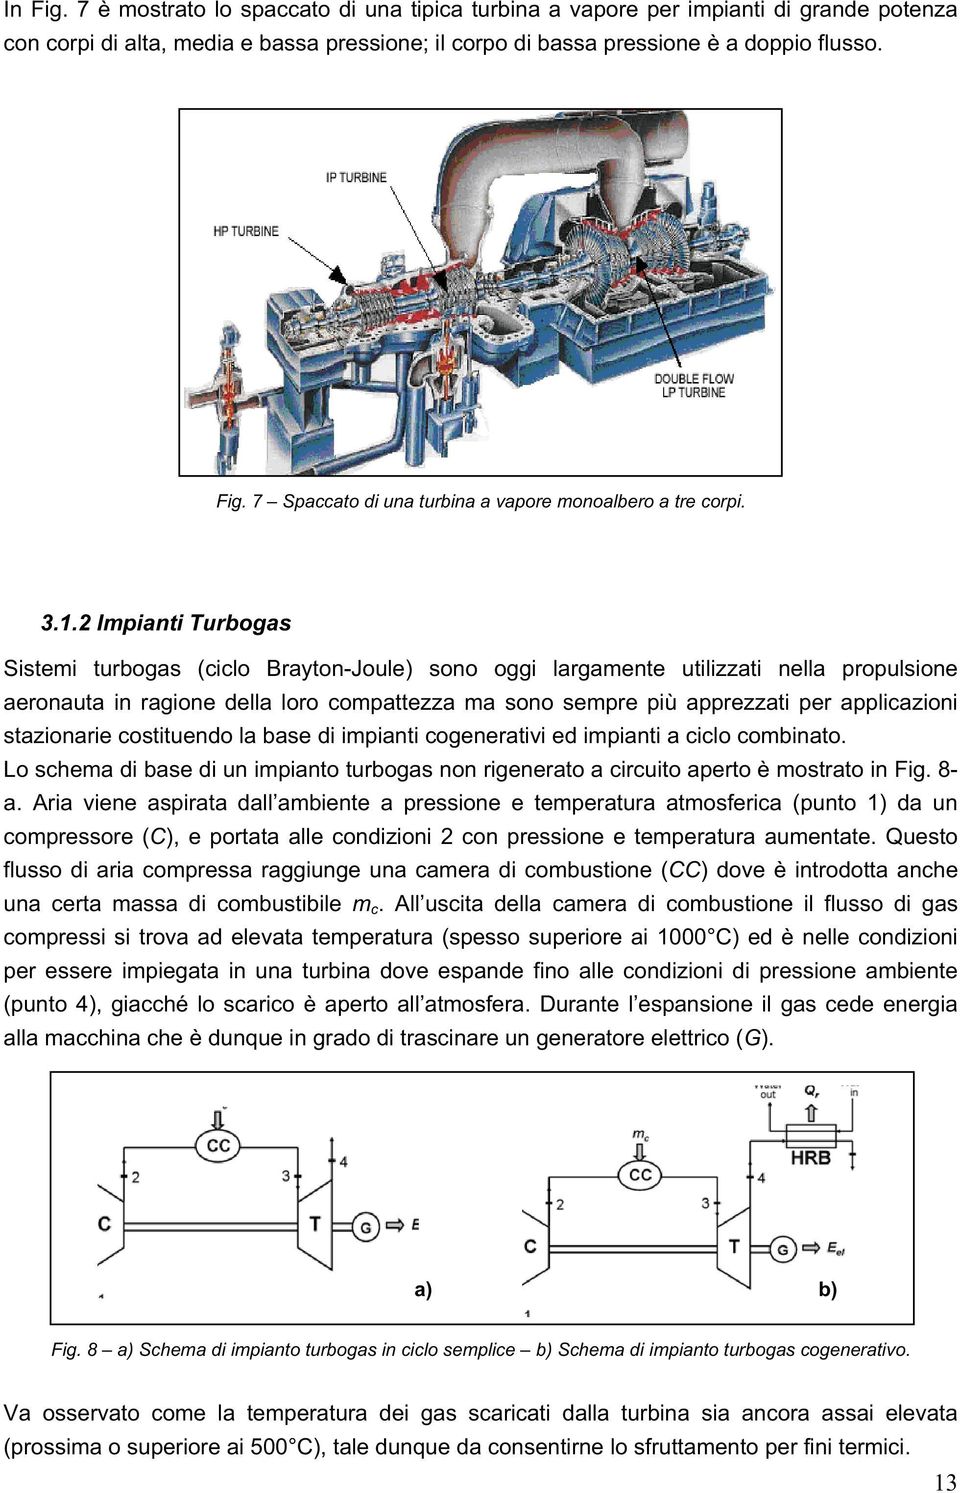 applicazioni stazionarie costituendo la base di impianti cogenerativi ed impianti a ciclo combinato. Lo schema di base di un impianto turbogas non rigenerato a circuito aperto è mostrato in Fig. 8- a.